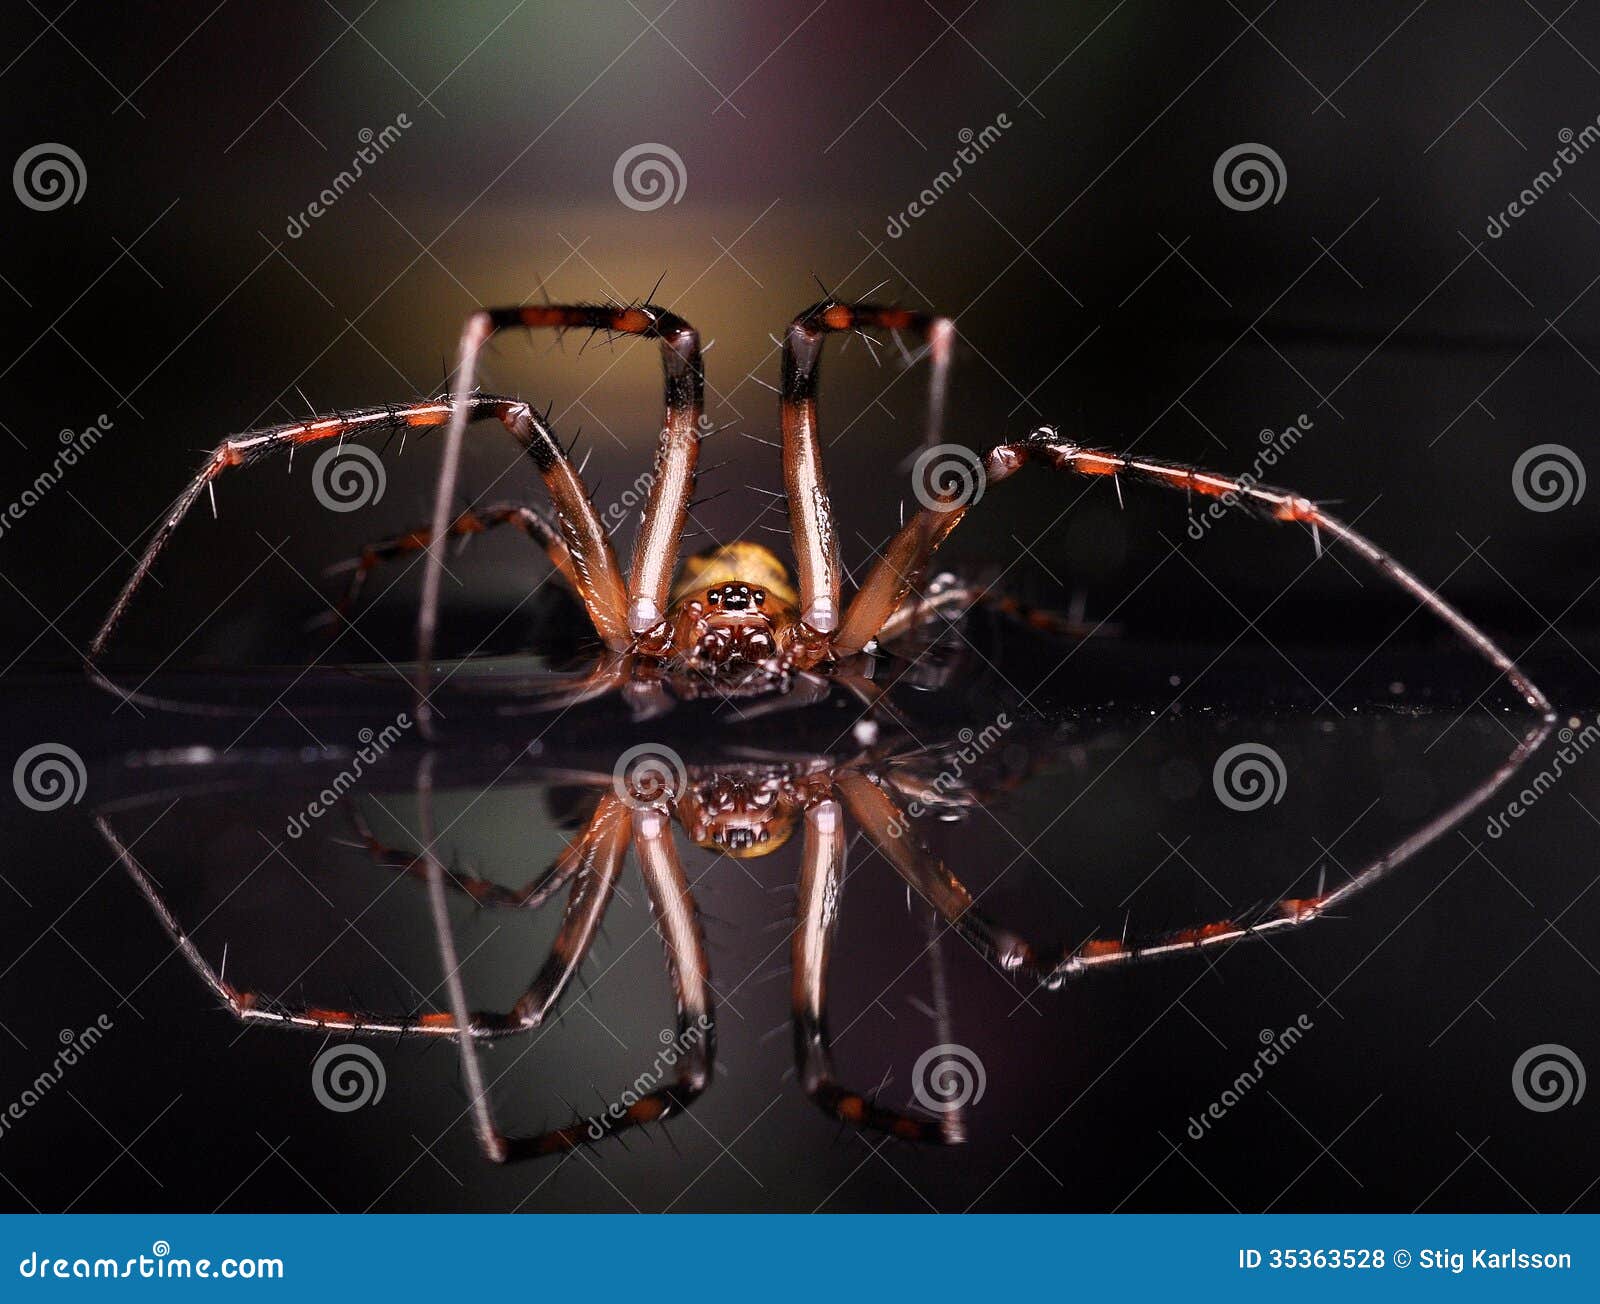 european cave spider meta menardi 2